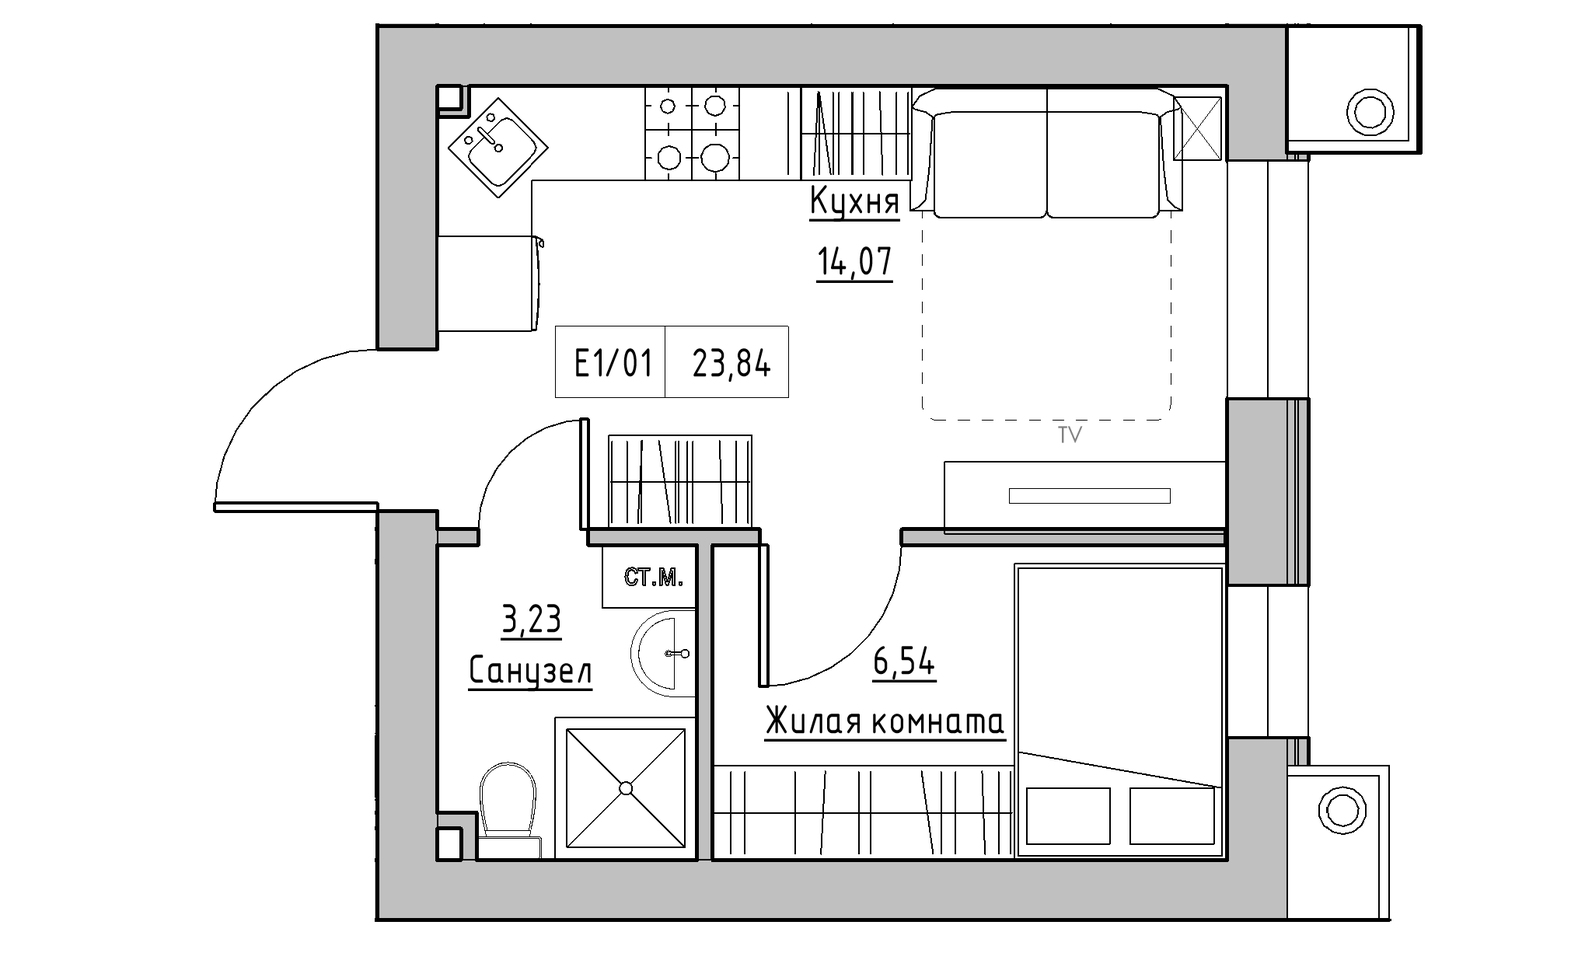 Планування 1-к квартира площею 23.84м2, KS-014-02/0011.